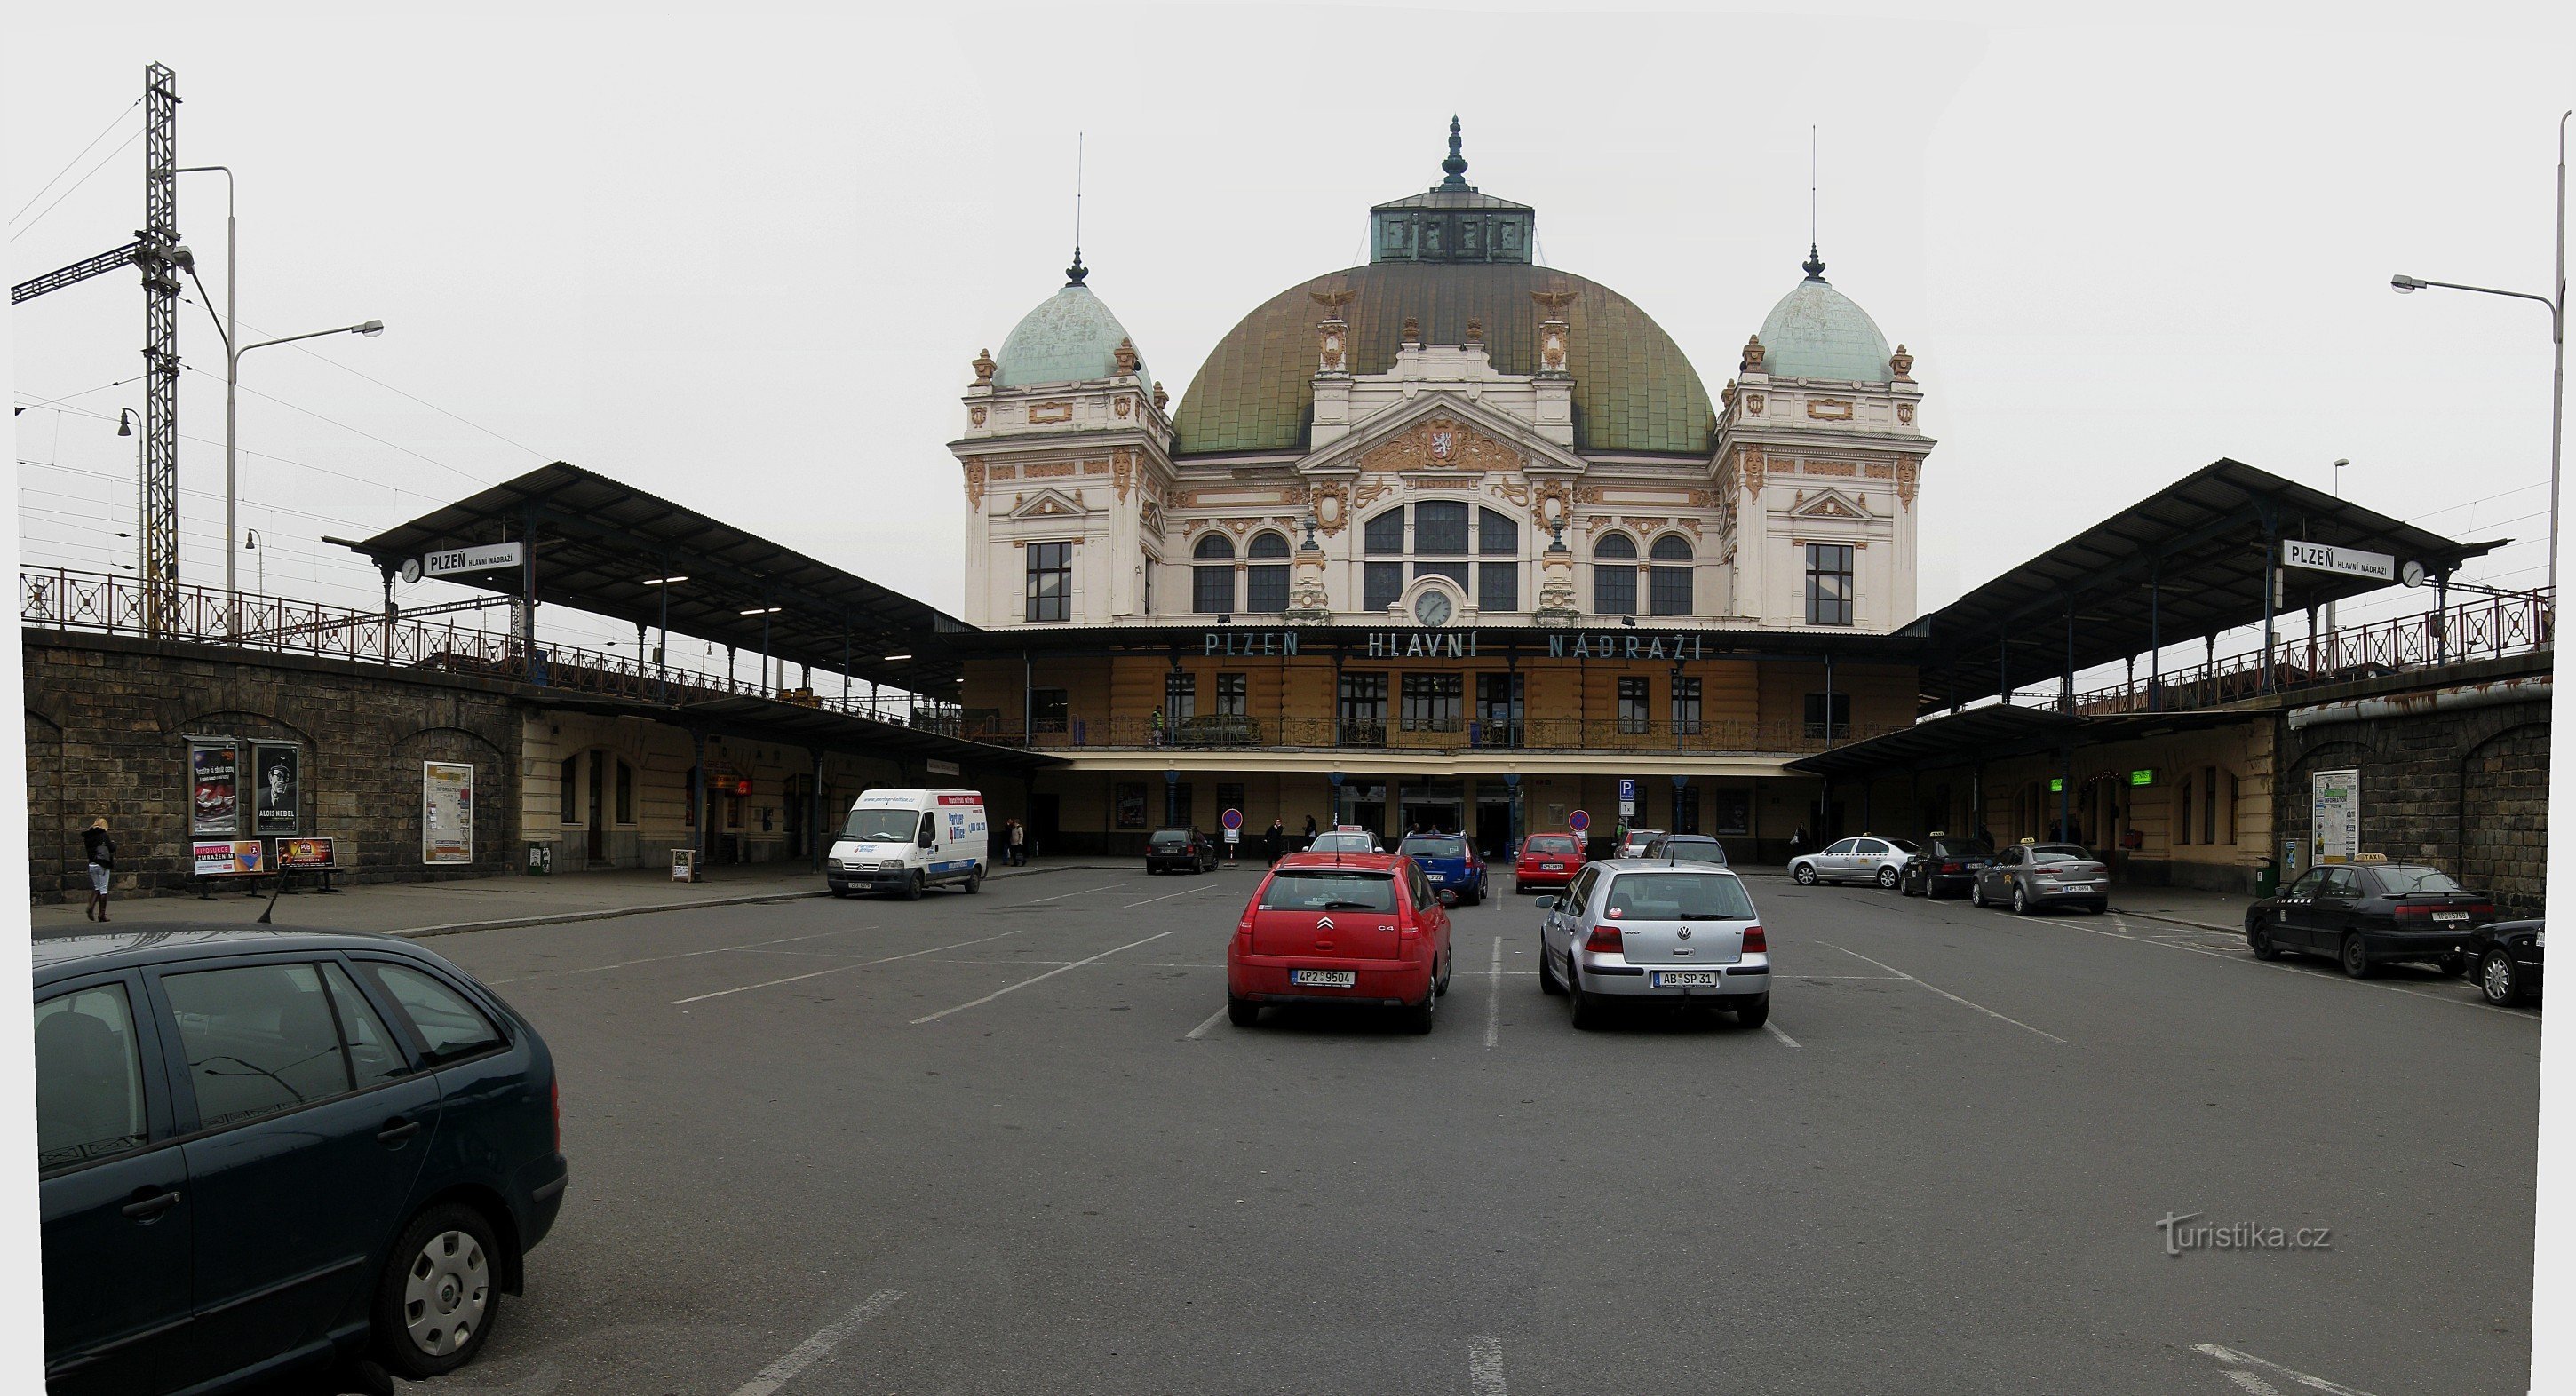 Stazione centrale di Pilsen